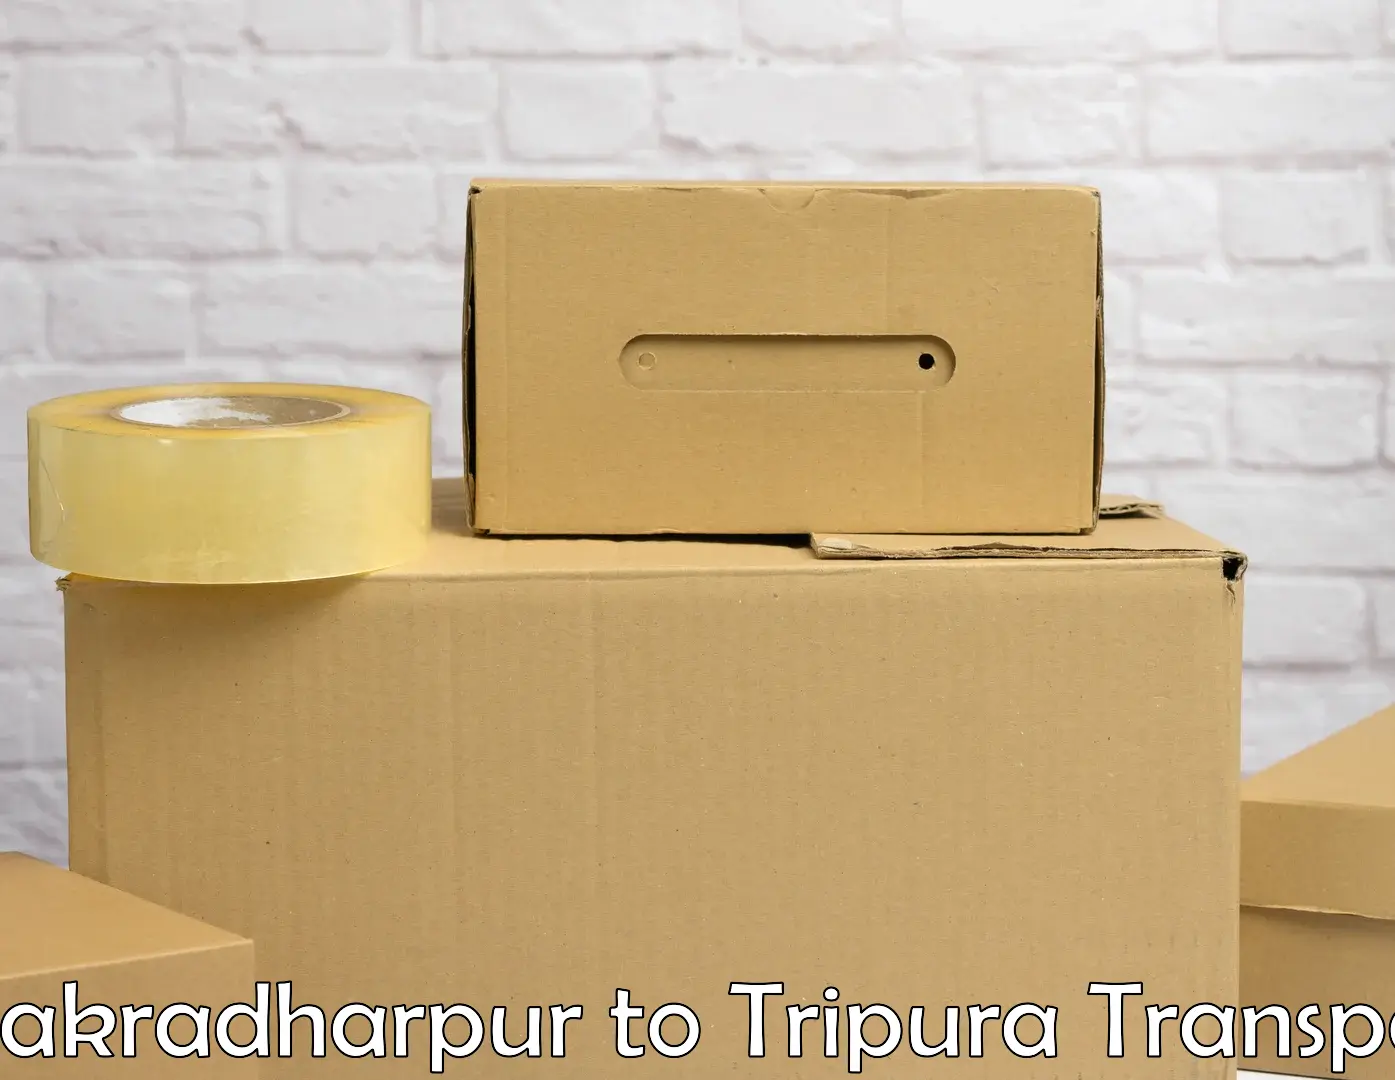 Sending bike to another city Chakradharpur to Tripura